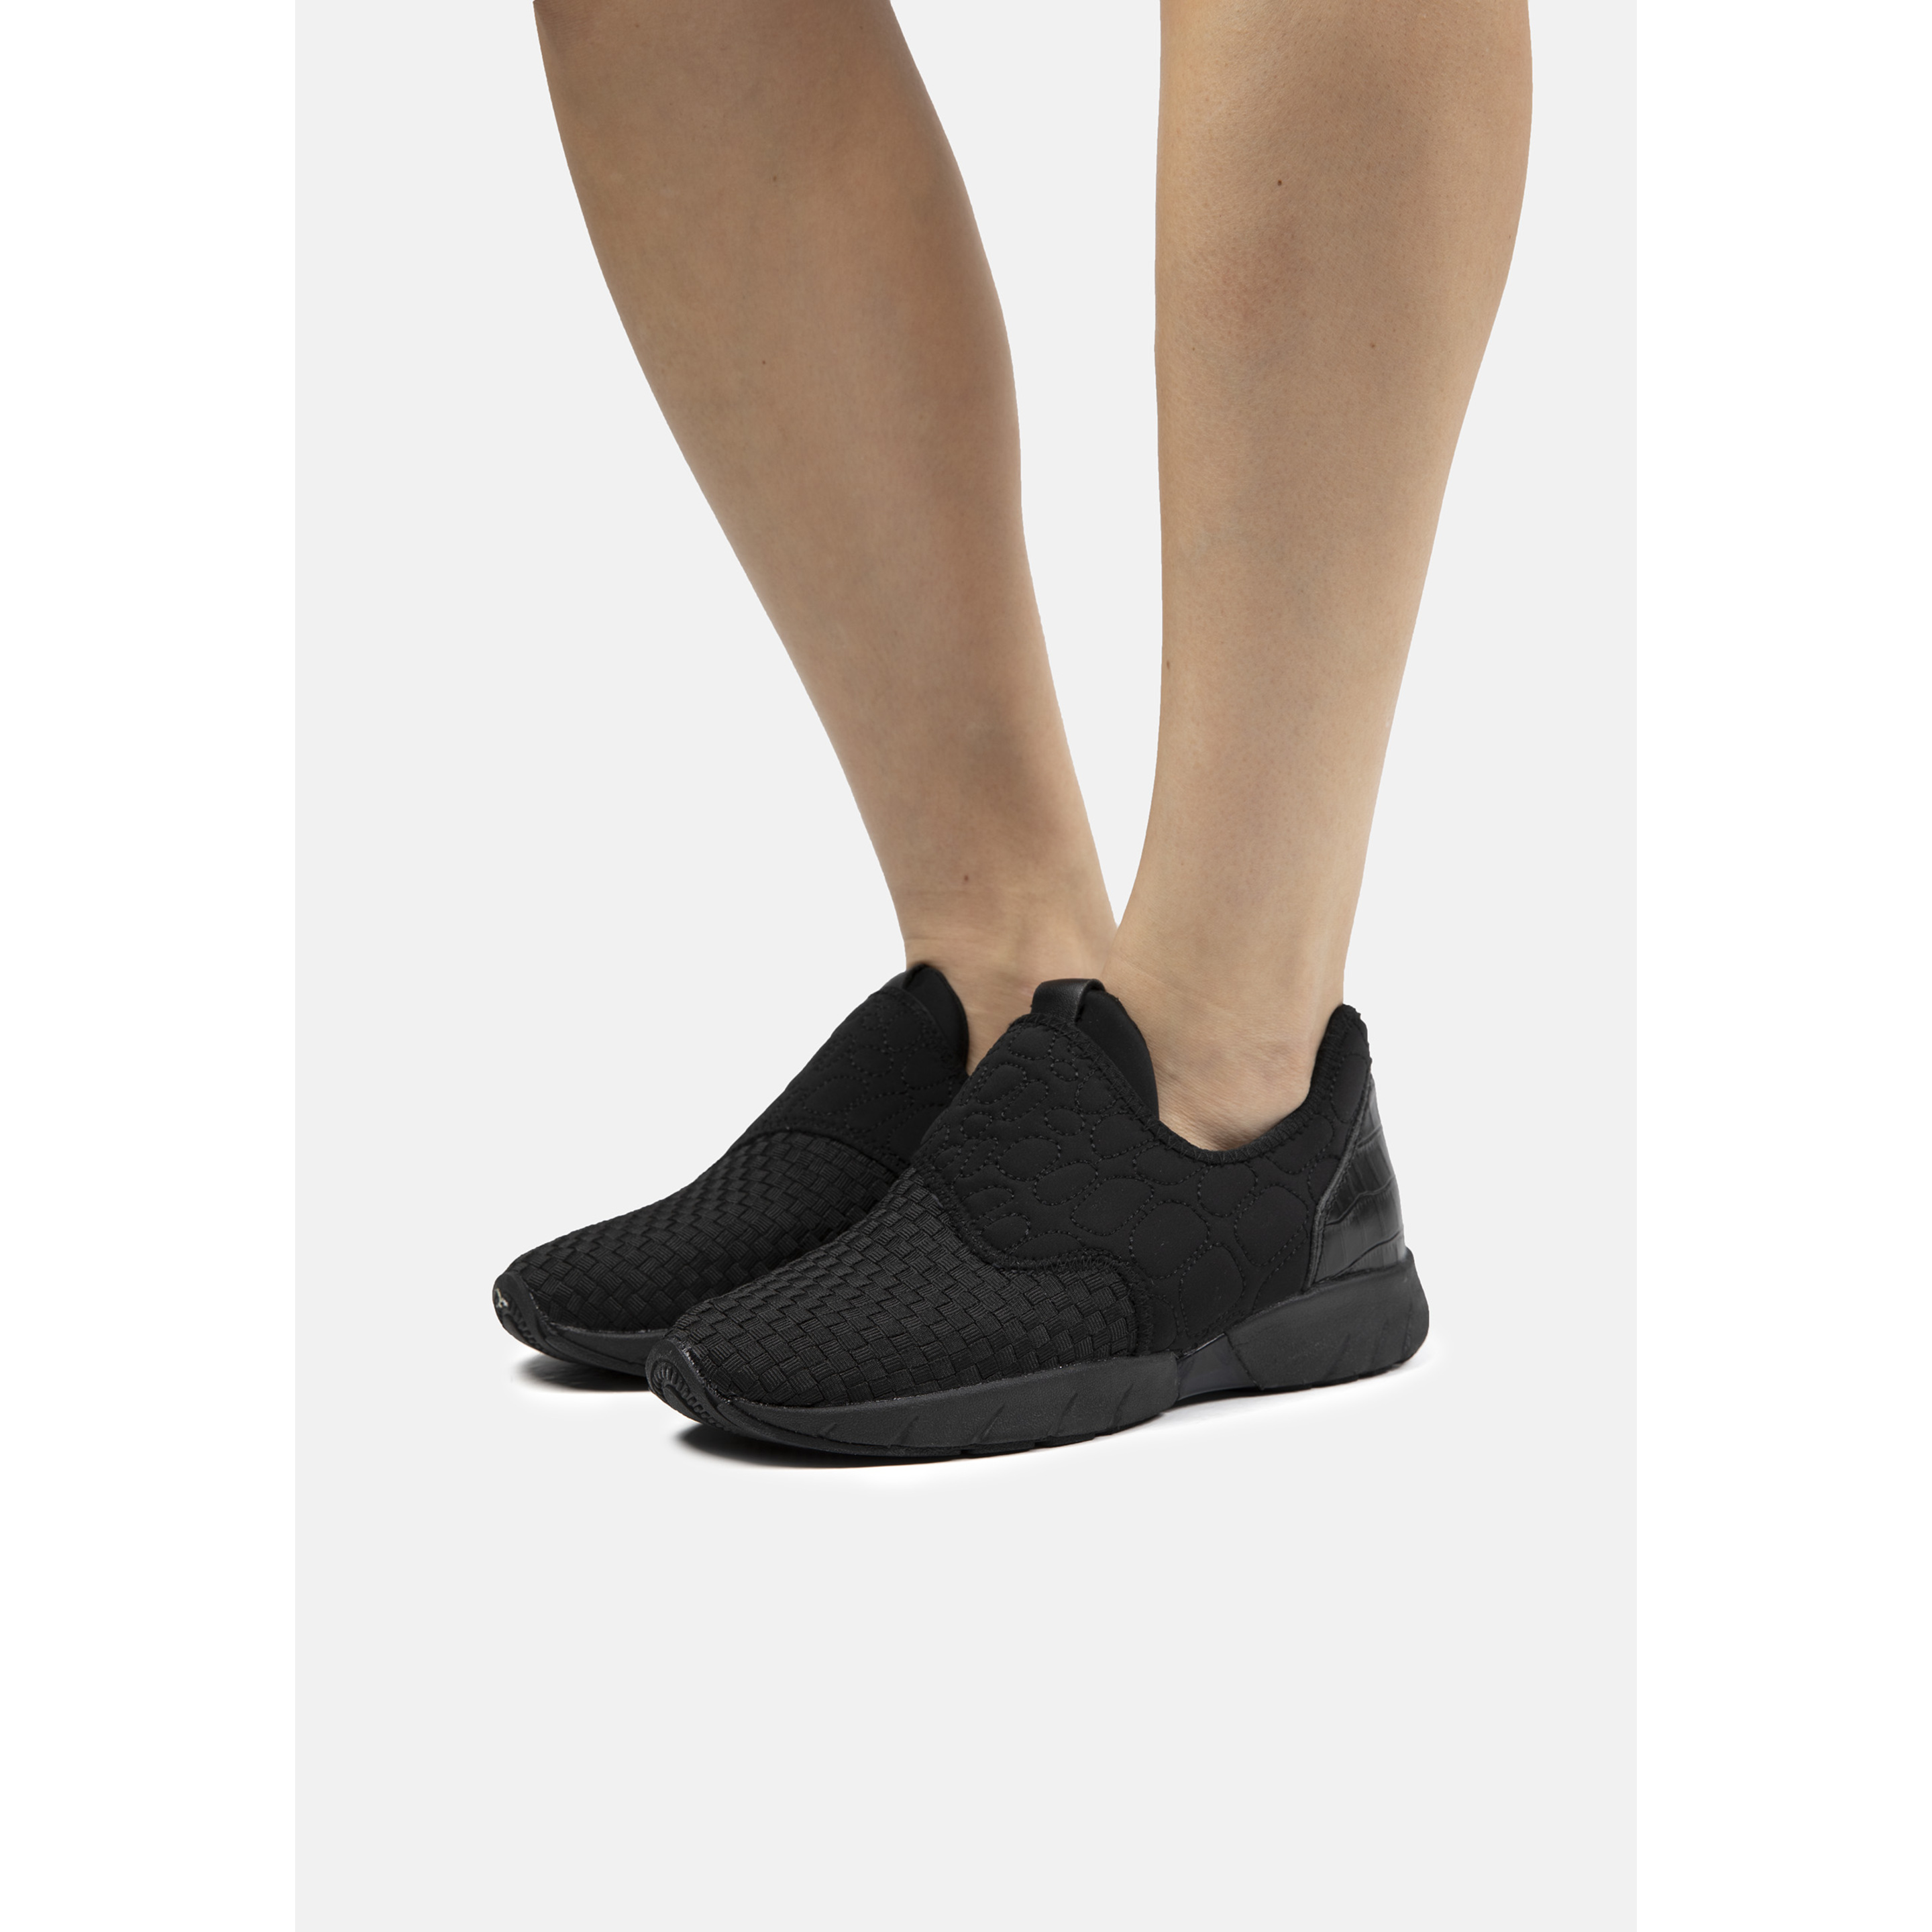 Zapatillas Deportivas De Mujer Bernie Mev De Textil En Negro (talla 35 A 42)